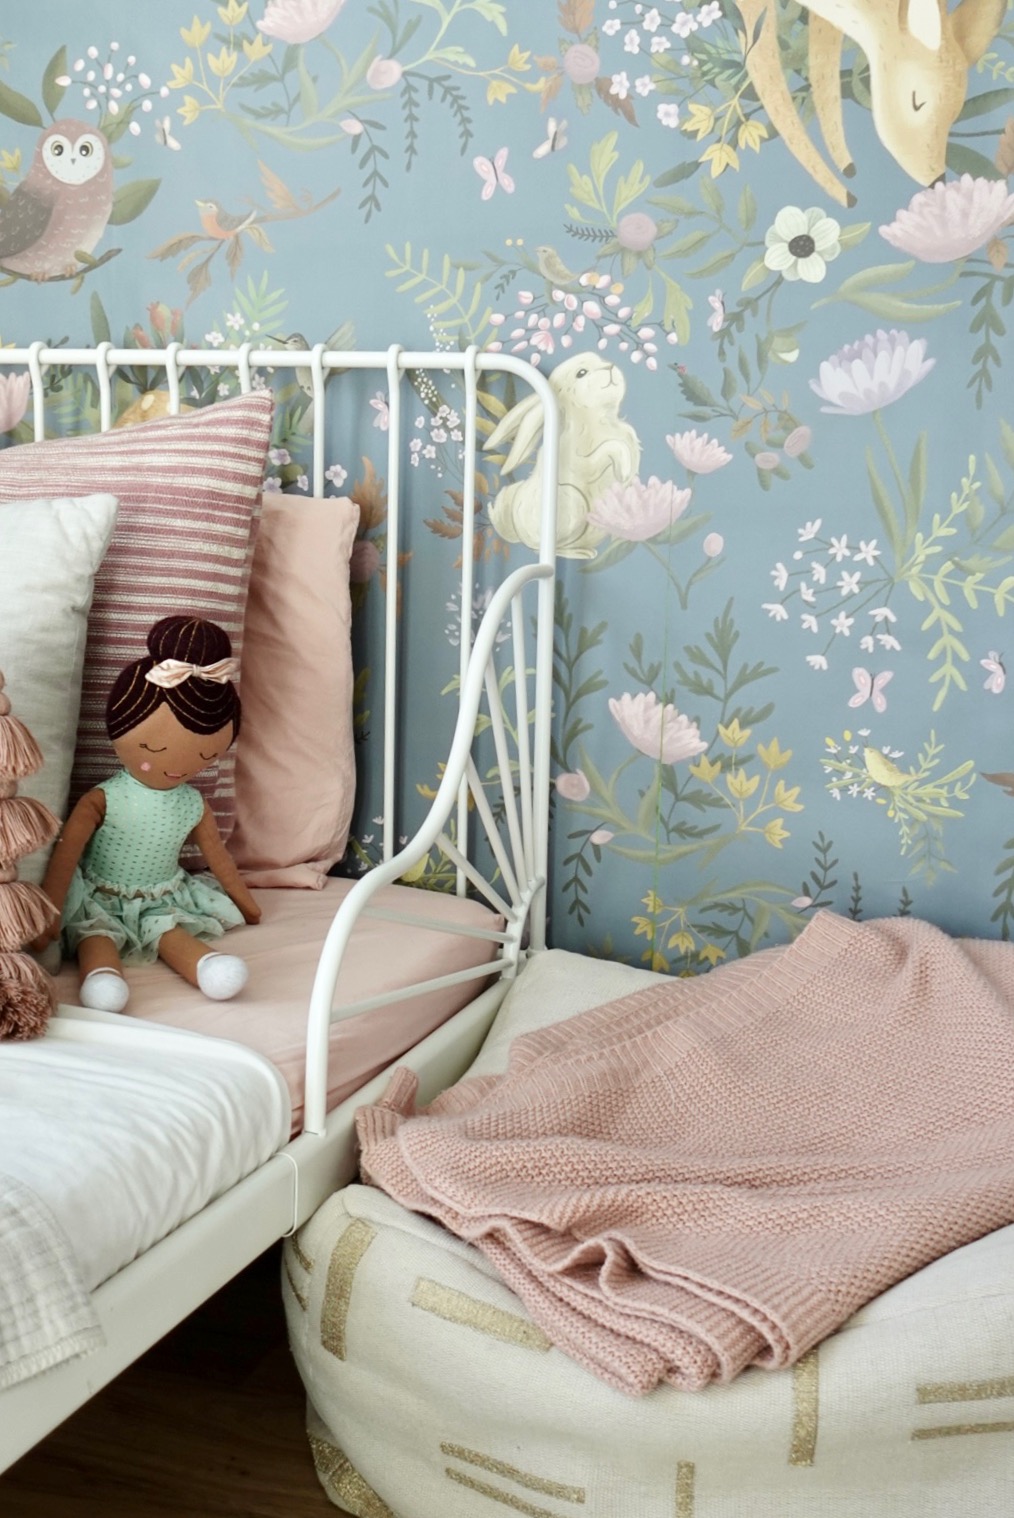 Ava's daisy inspired girls bedroom - Just A Mamma